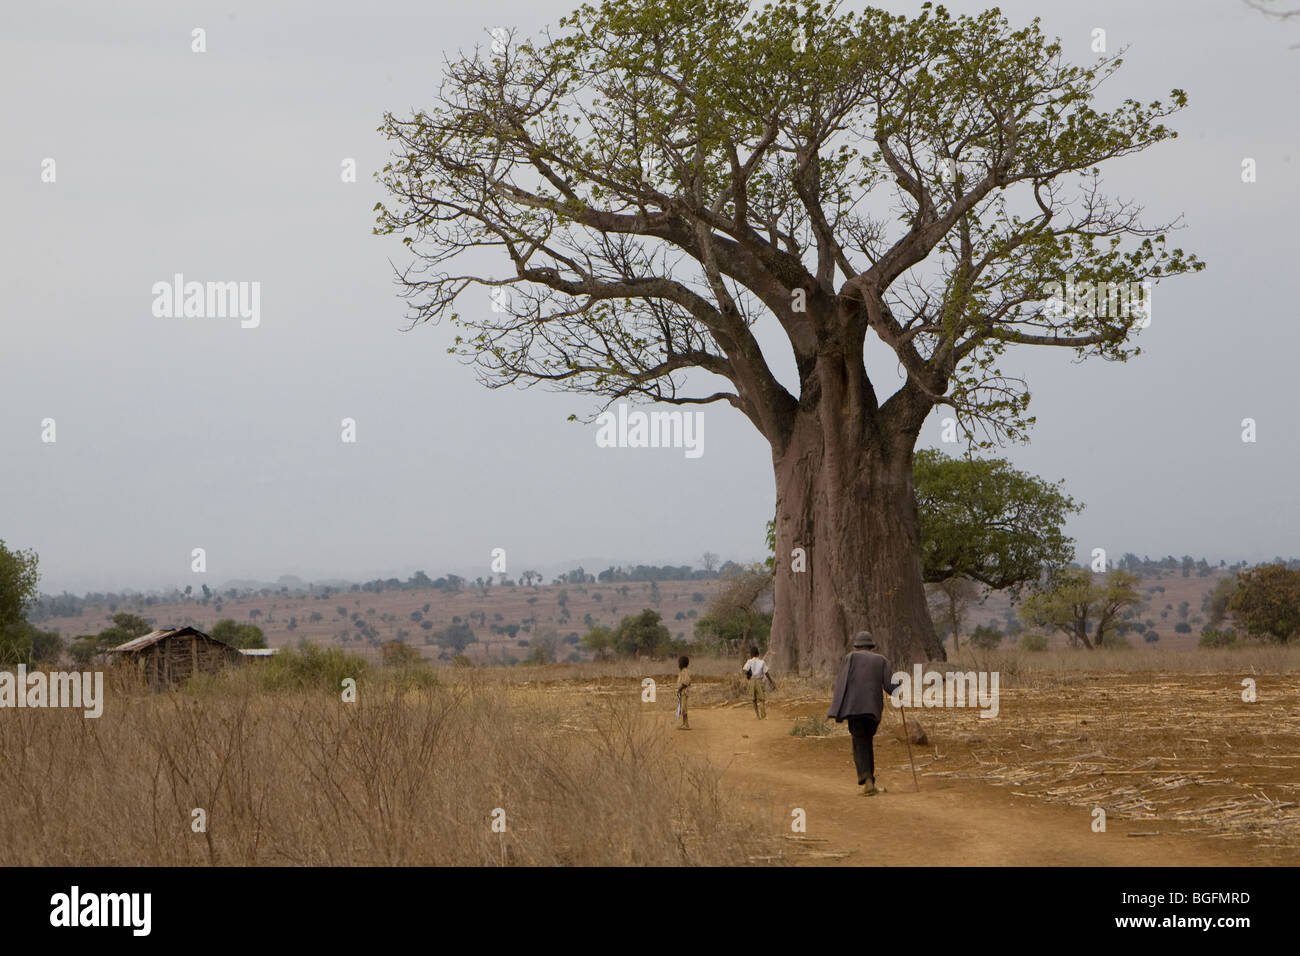 Baobab tree, Chekereni Village, Tanzania, East Africa Stock Photo